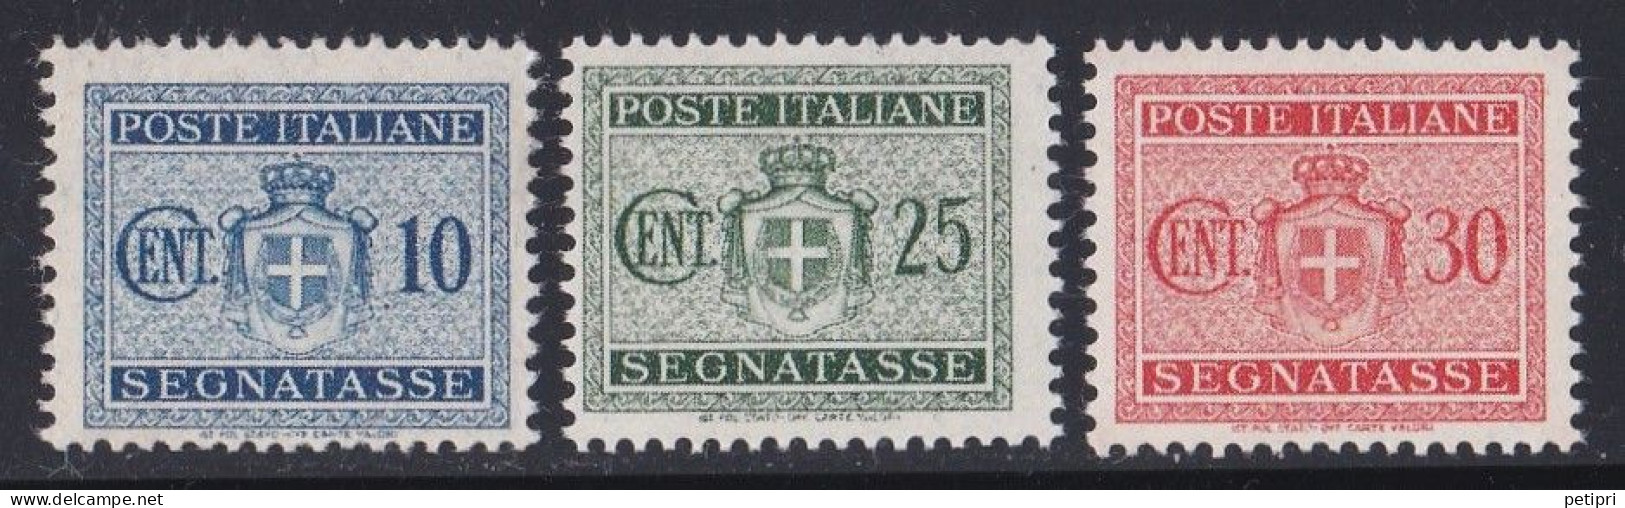 Italie - 1947  République  - Taxe  Y&T  N ° 54  55  56   Neuf ** - Taxe